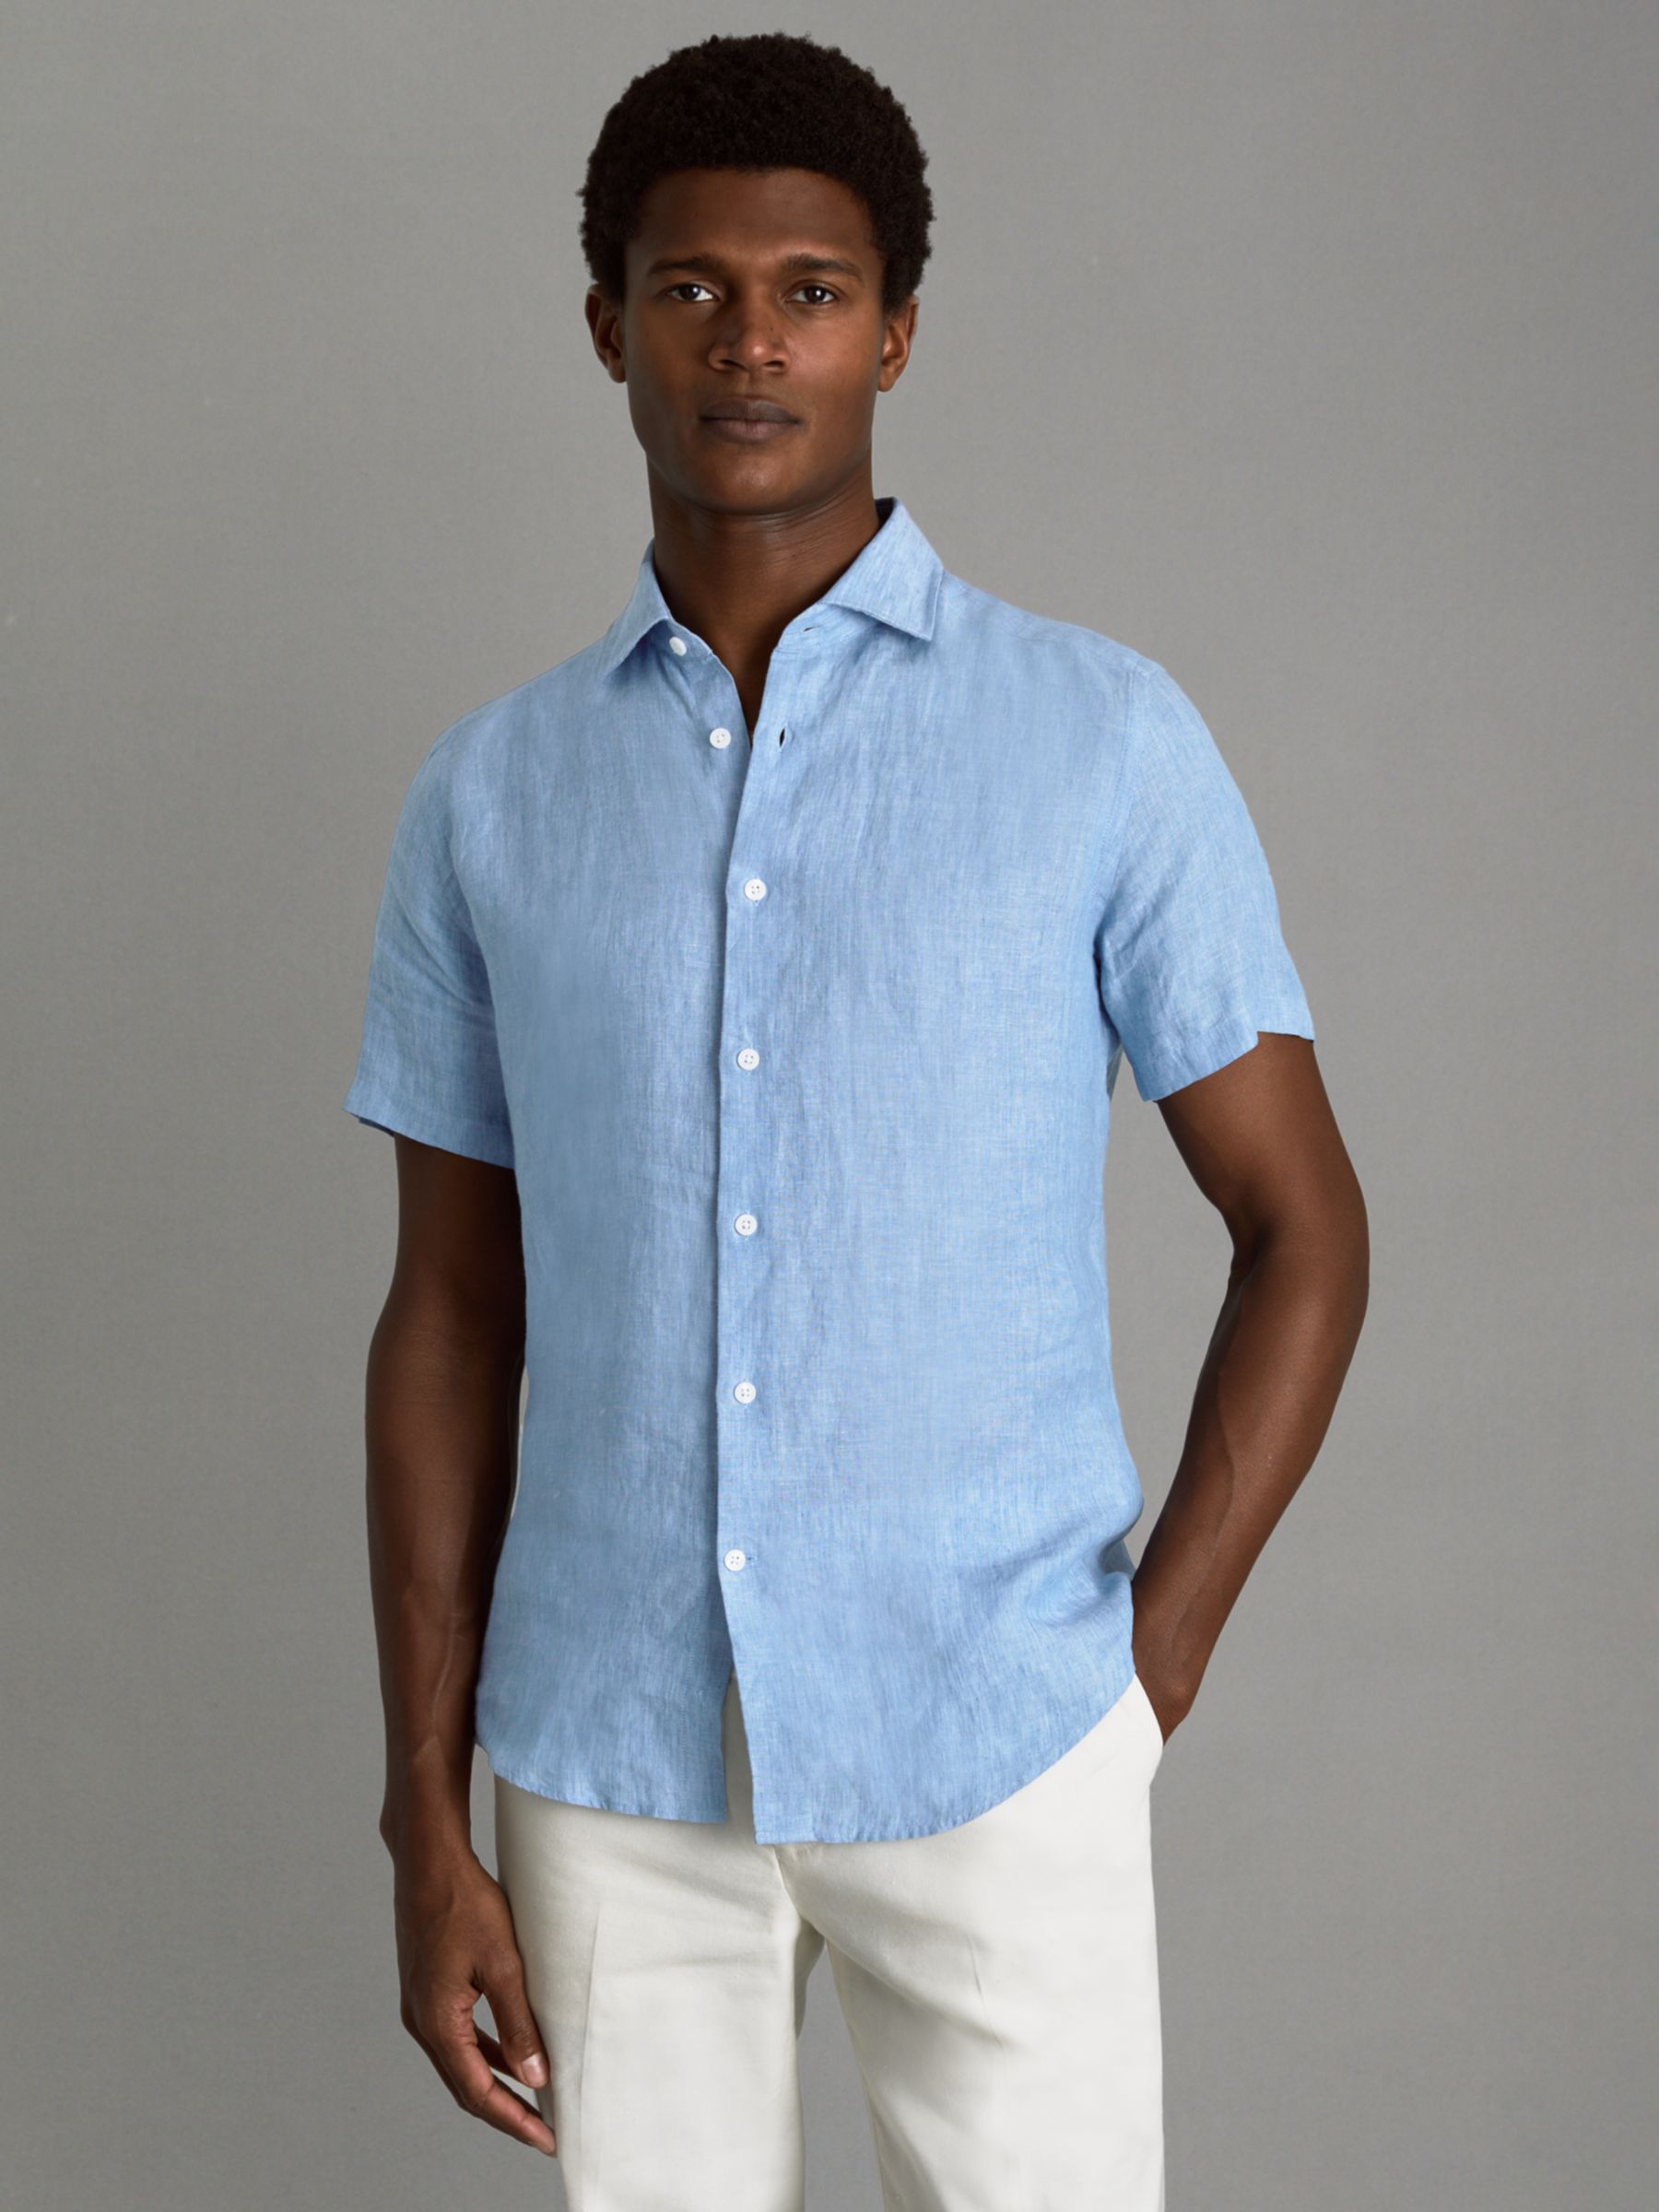 Reiss Holiday Linen Regular Fit Shirt, Sky Blue at John Lewis & Partners